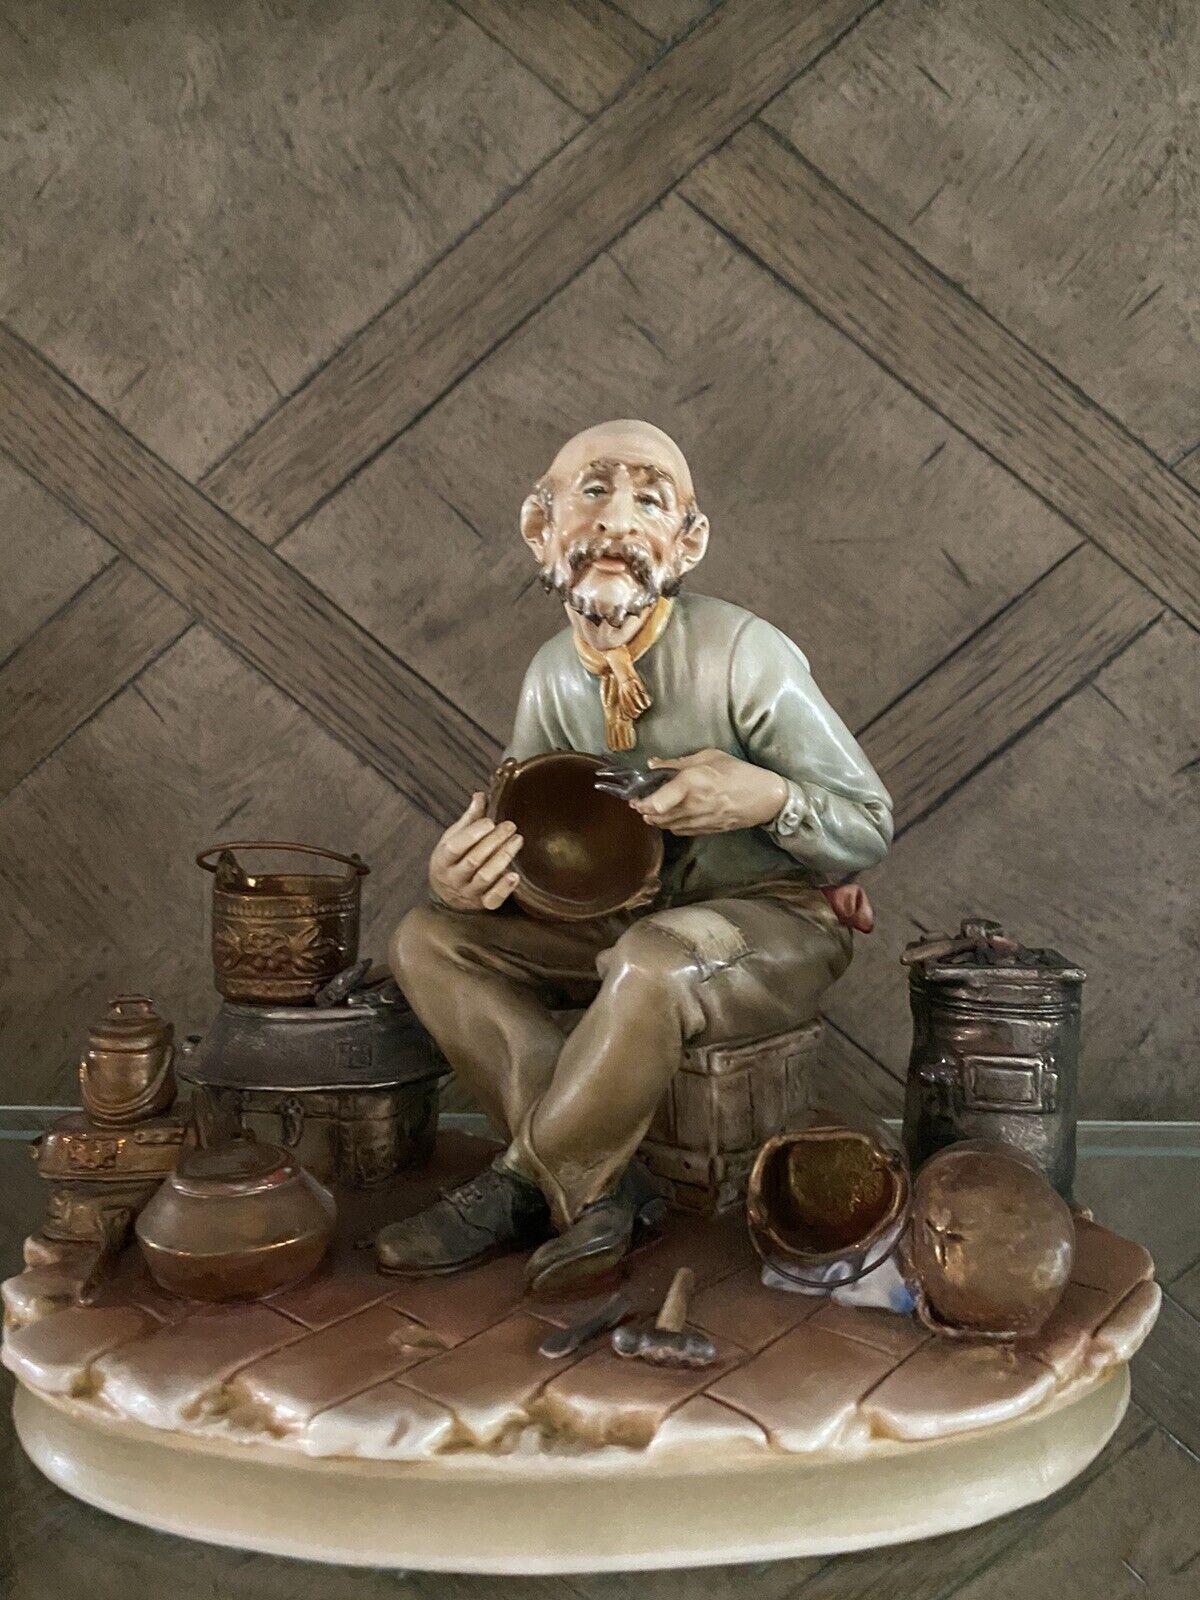 Antonio Borsato Unique Porcelain figurine “Lost In Meditation”